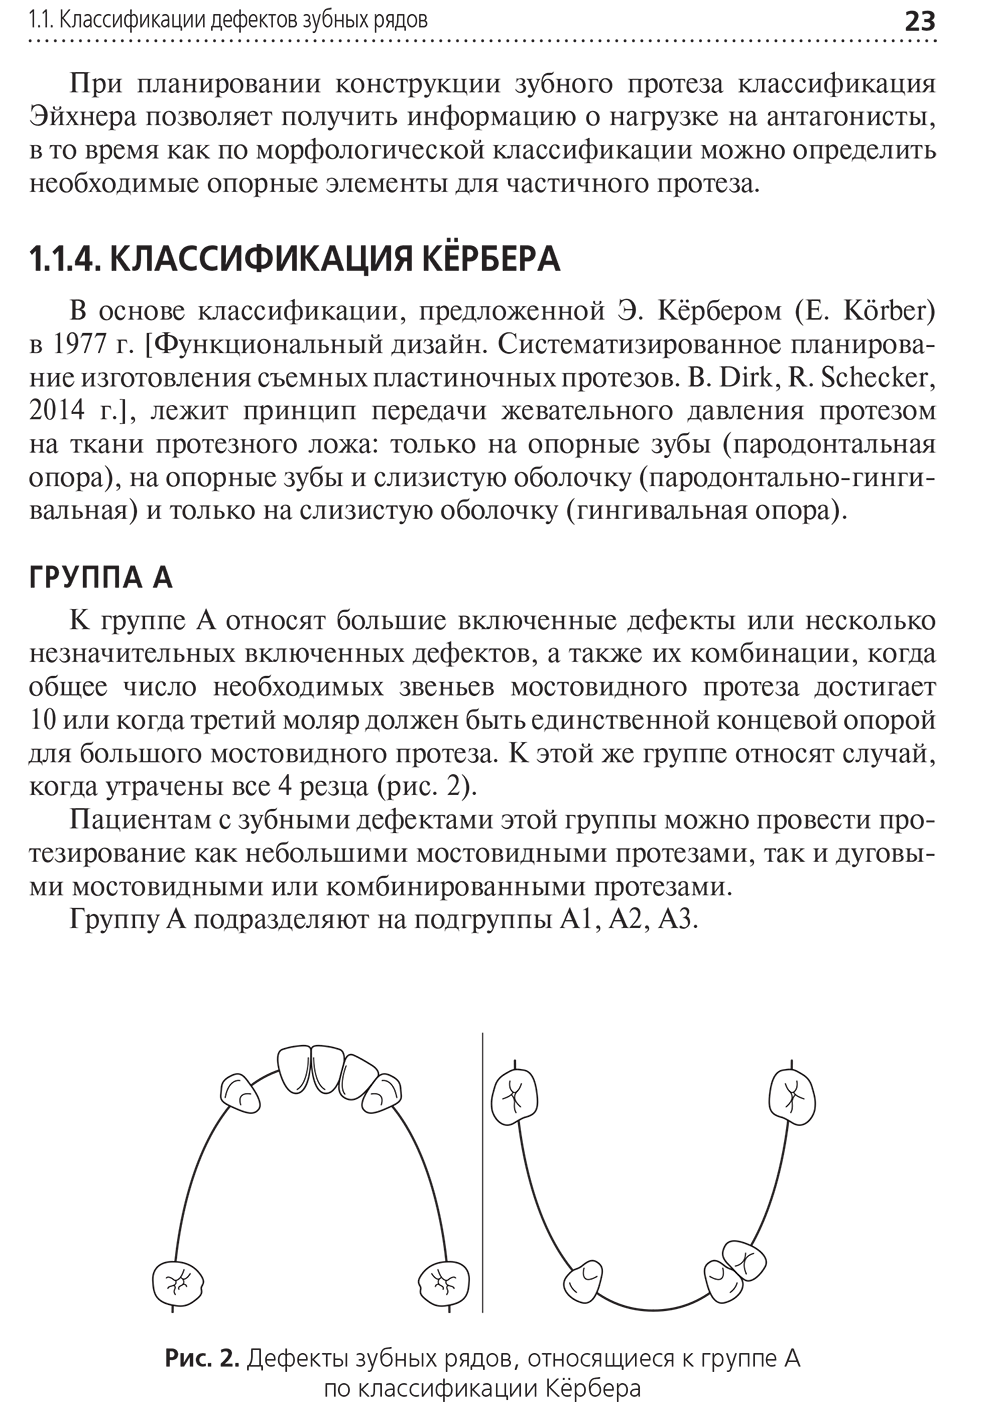 Пример страницы из книги "Технология изготовления бюгельных протезов: учебник" - А. С. Утюжа